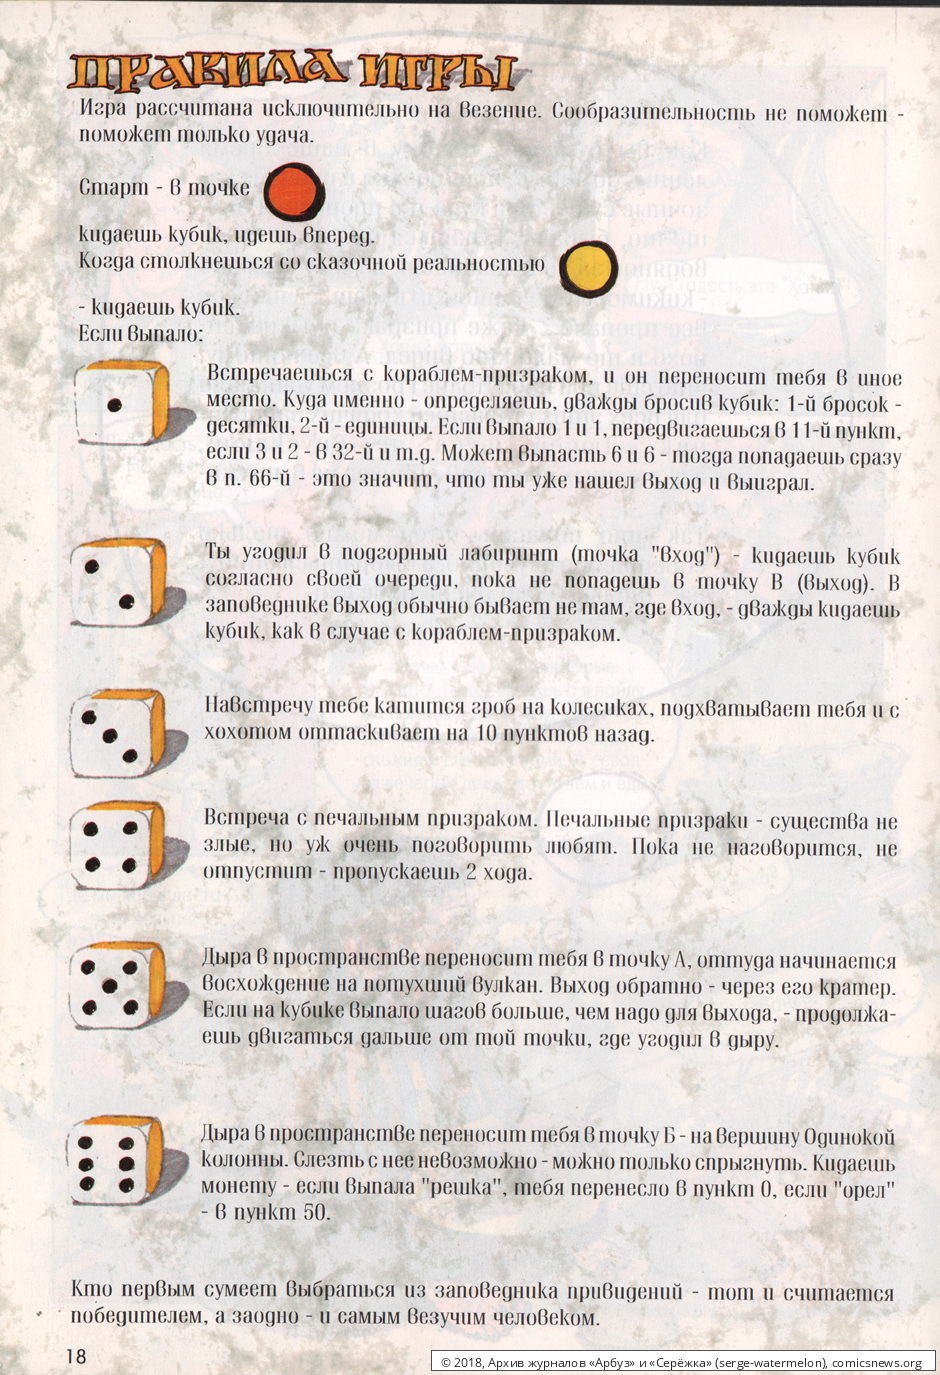 № 21 ( "Серёжка" № 7 / 1996 ) - Архив журналов «Арбуз» и «Серёжка»